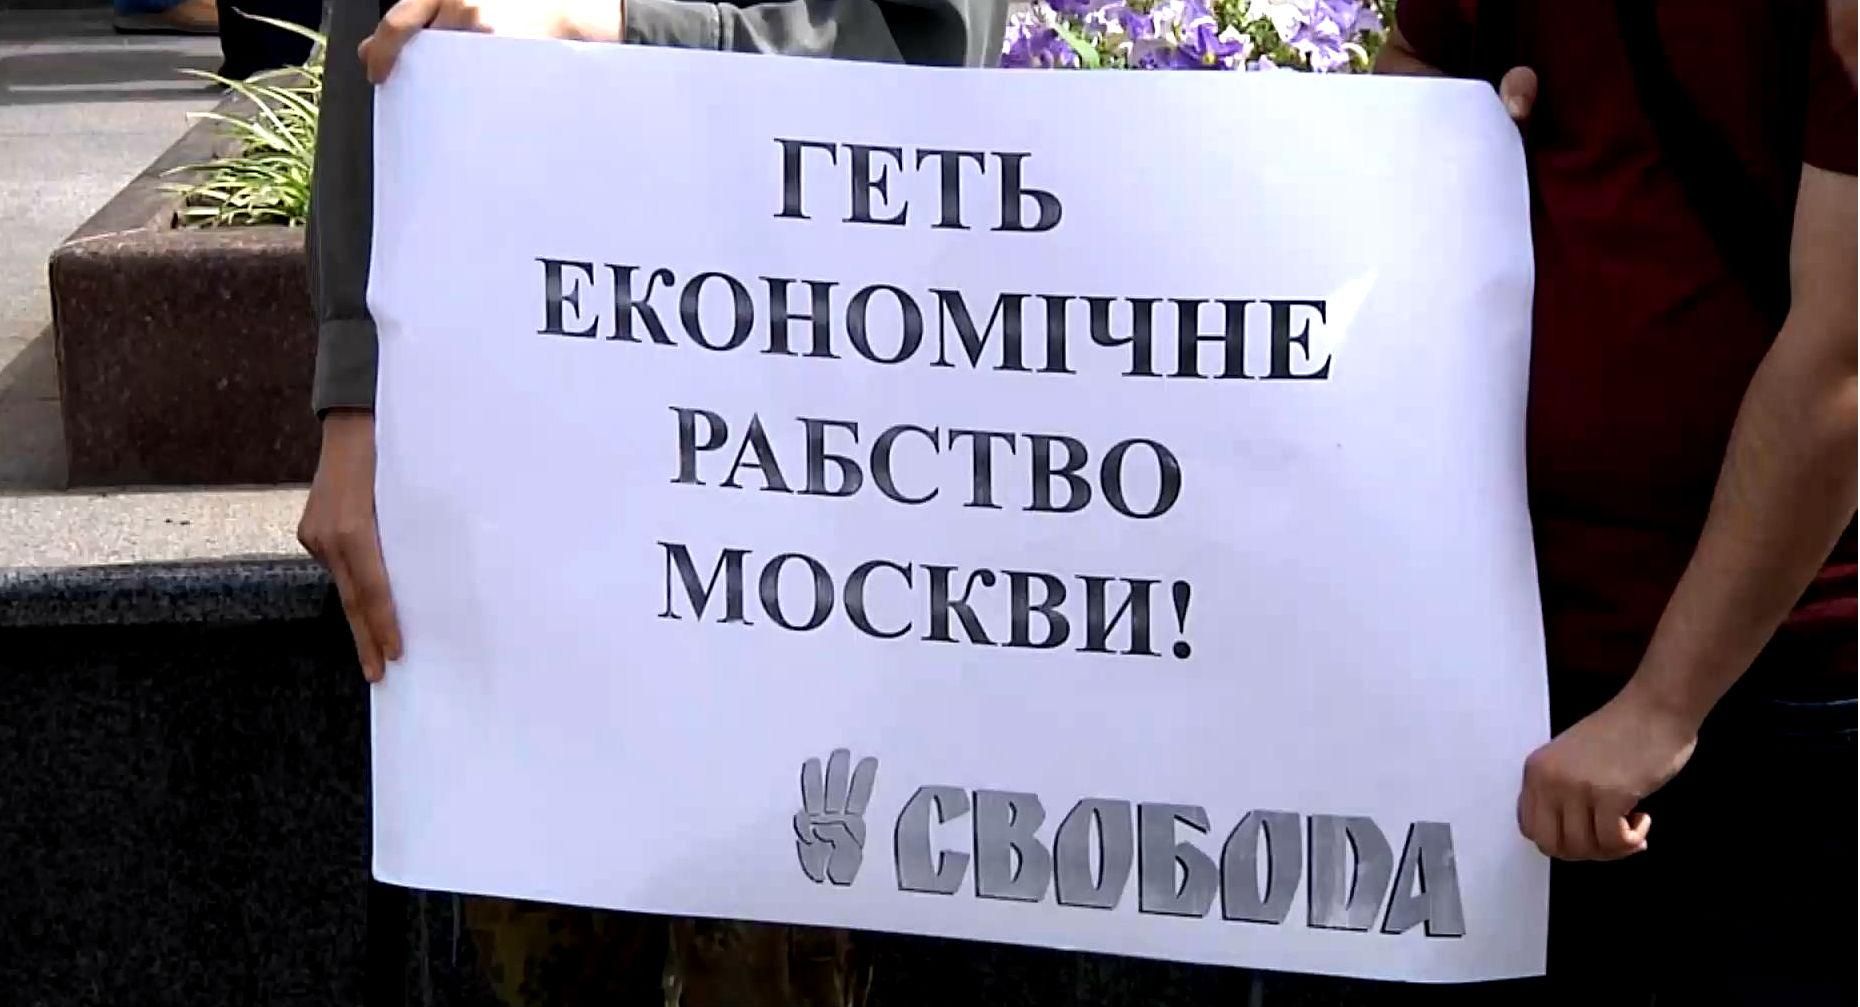 Ну и Бог с Россией, будут другие страны у нас покупать: митинг в Запорожье